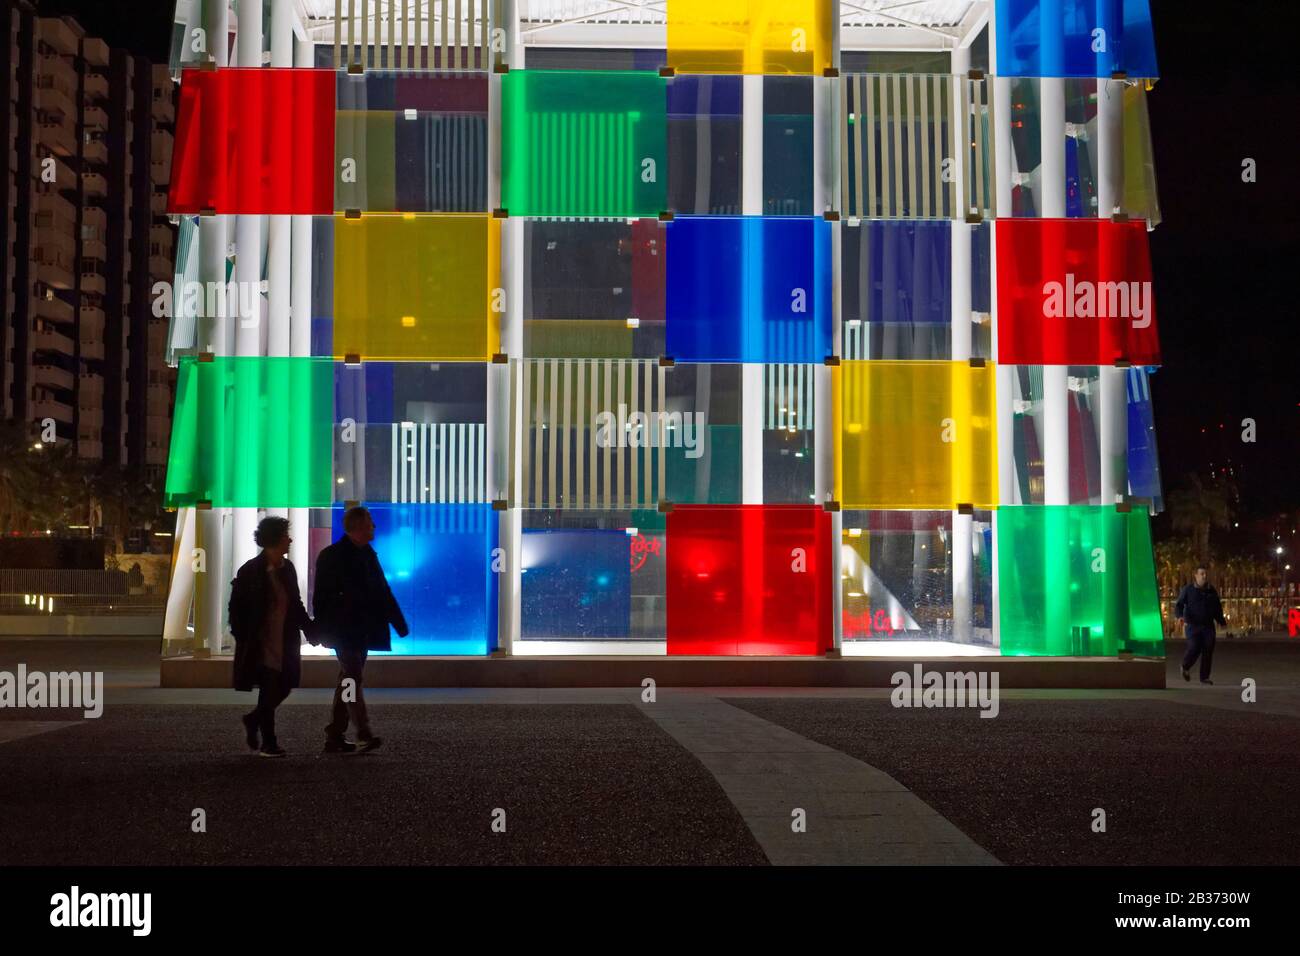 Espagne, Andalousie, Costa del sol, Malaga, le bord de mer sur le port, Le Centre d'art Pompidou le Cube par Daniel Buren Banque D'Images